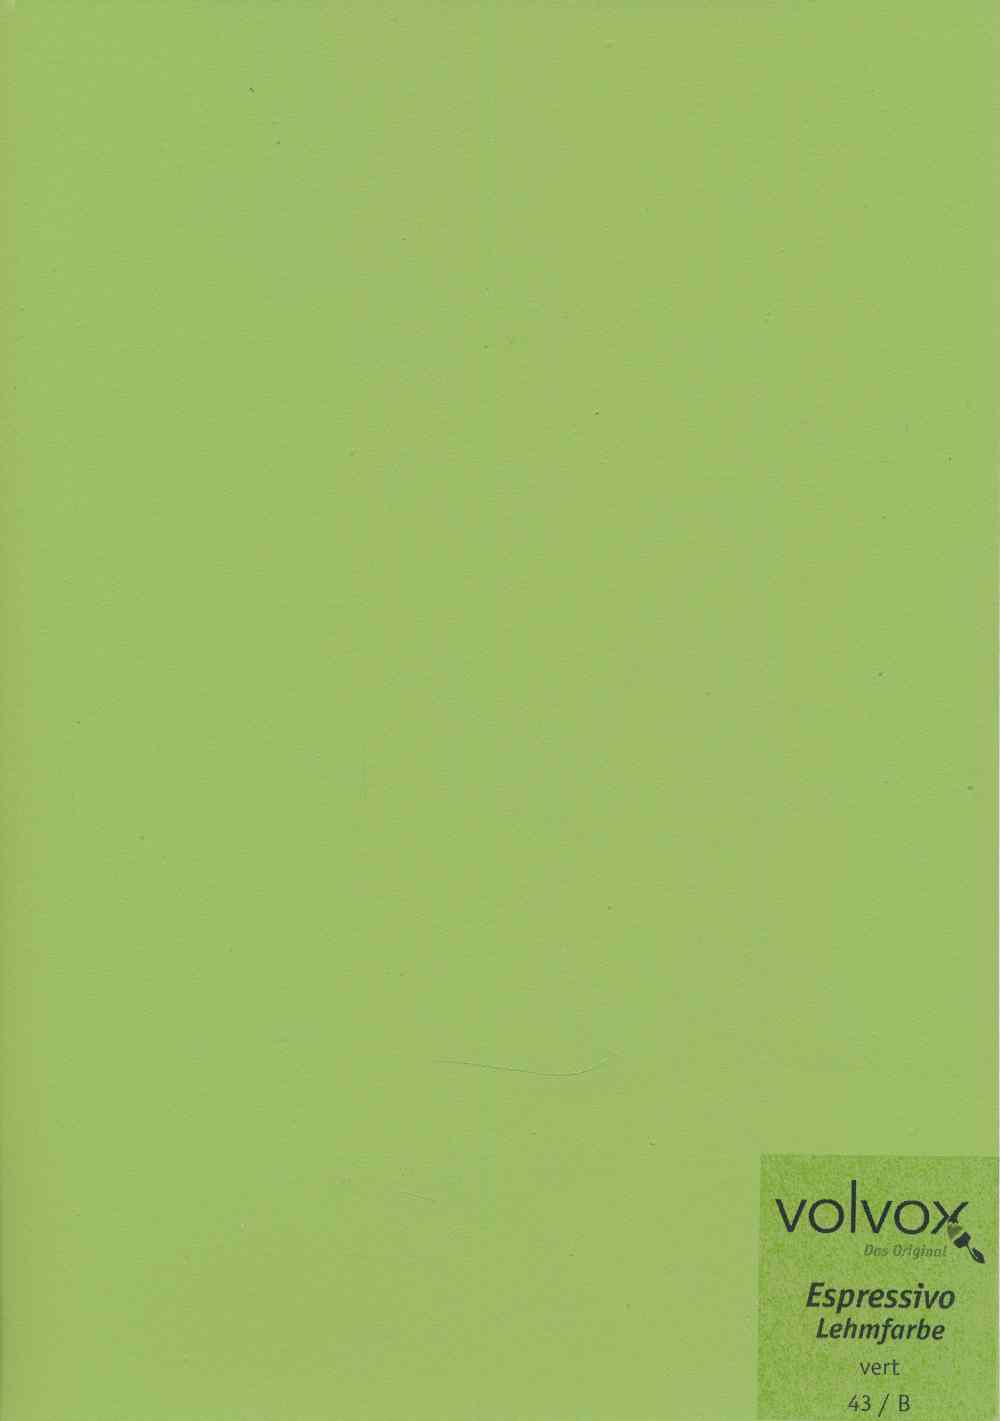 Volvox Espressivo Lehmfarbe 043 vert · 0,9ltr.